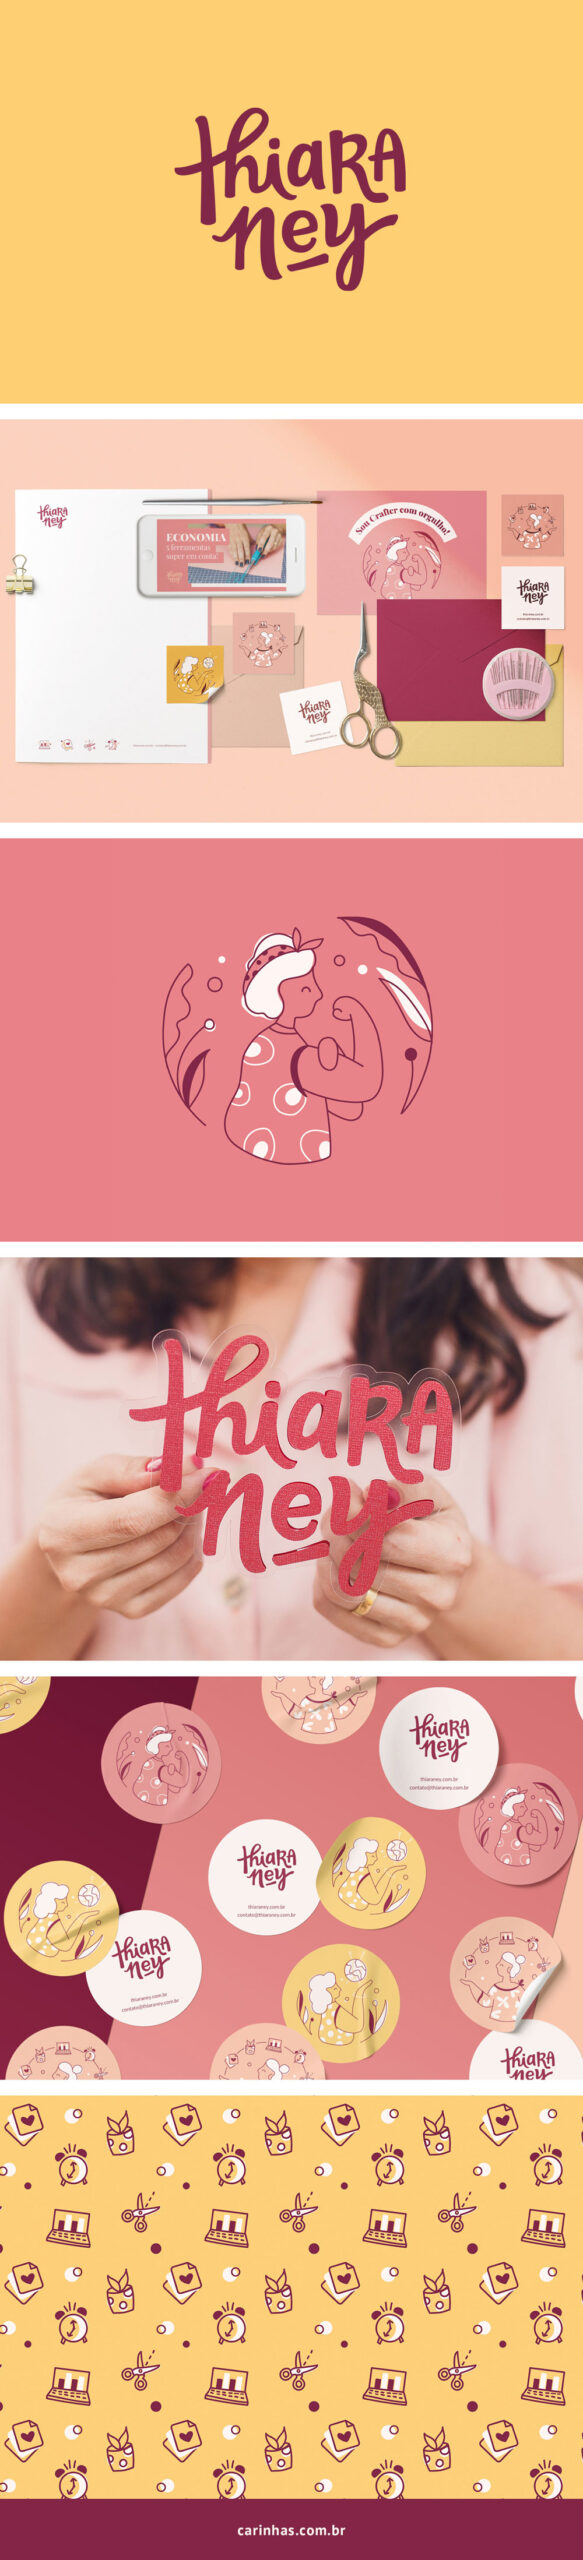 Thiara Ney - Projeto de Marca Apaixonante para cursos de gestão voltados para crafters